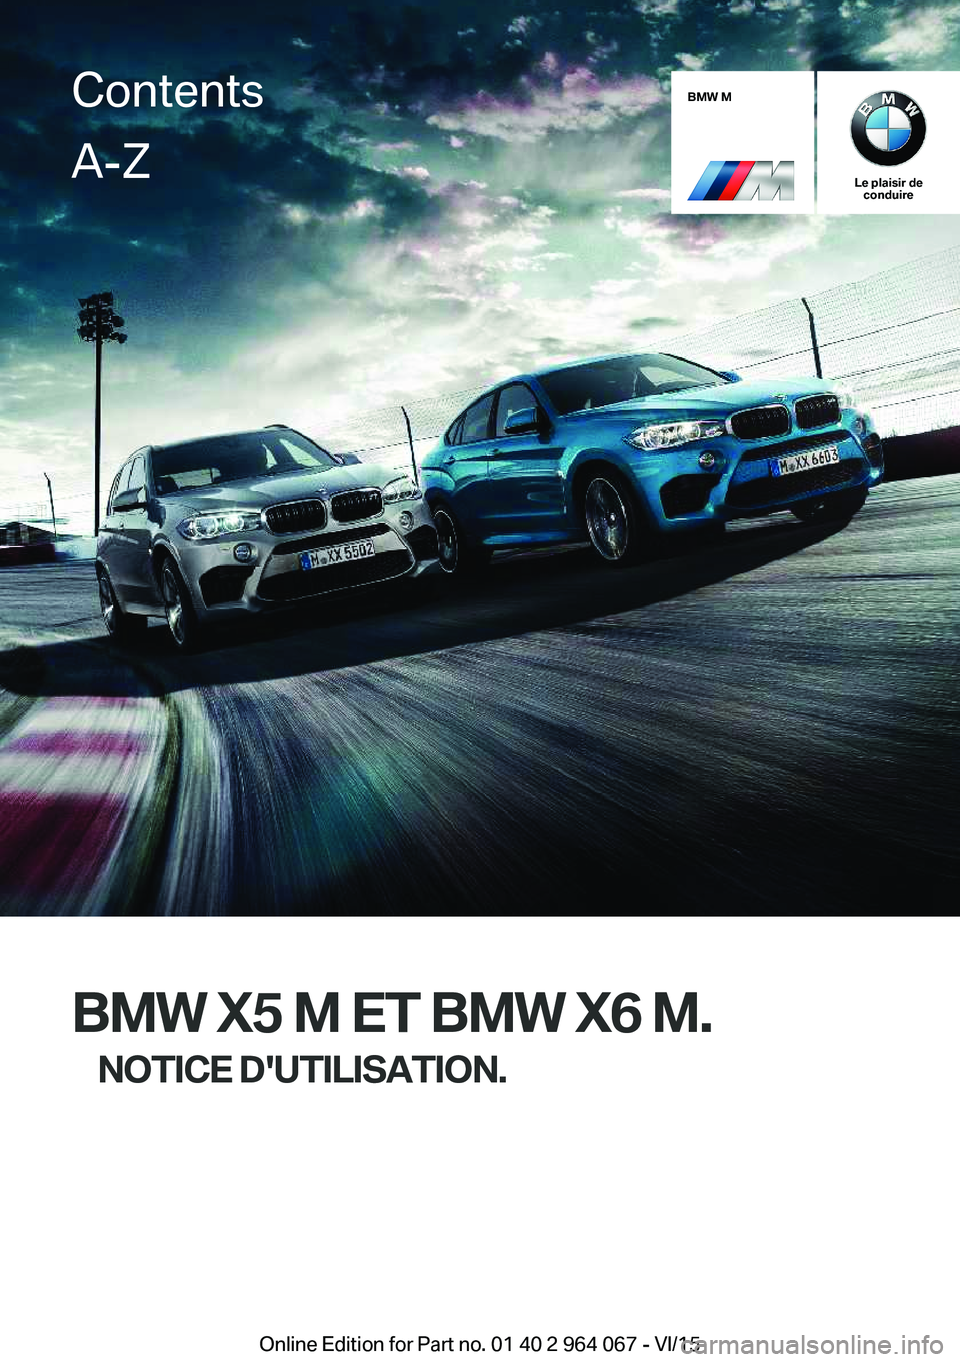 BMW X6 M 2016  Notices Demploi (in French) BMW M
Le plaisir deconduire
BMW X5 M ET BMW X6 M.
NOTICE D'UTILISATION.
ContentsA-Z
Online Edition for Part no. 01 40 2 964 067 - VI/15   